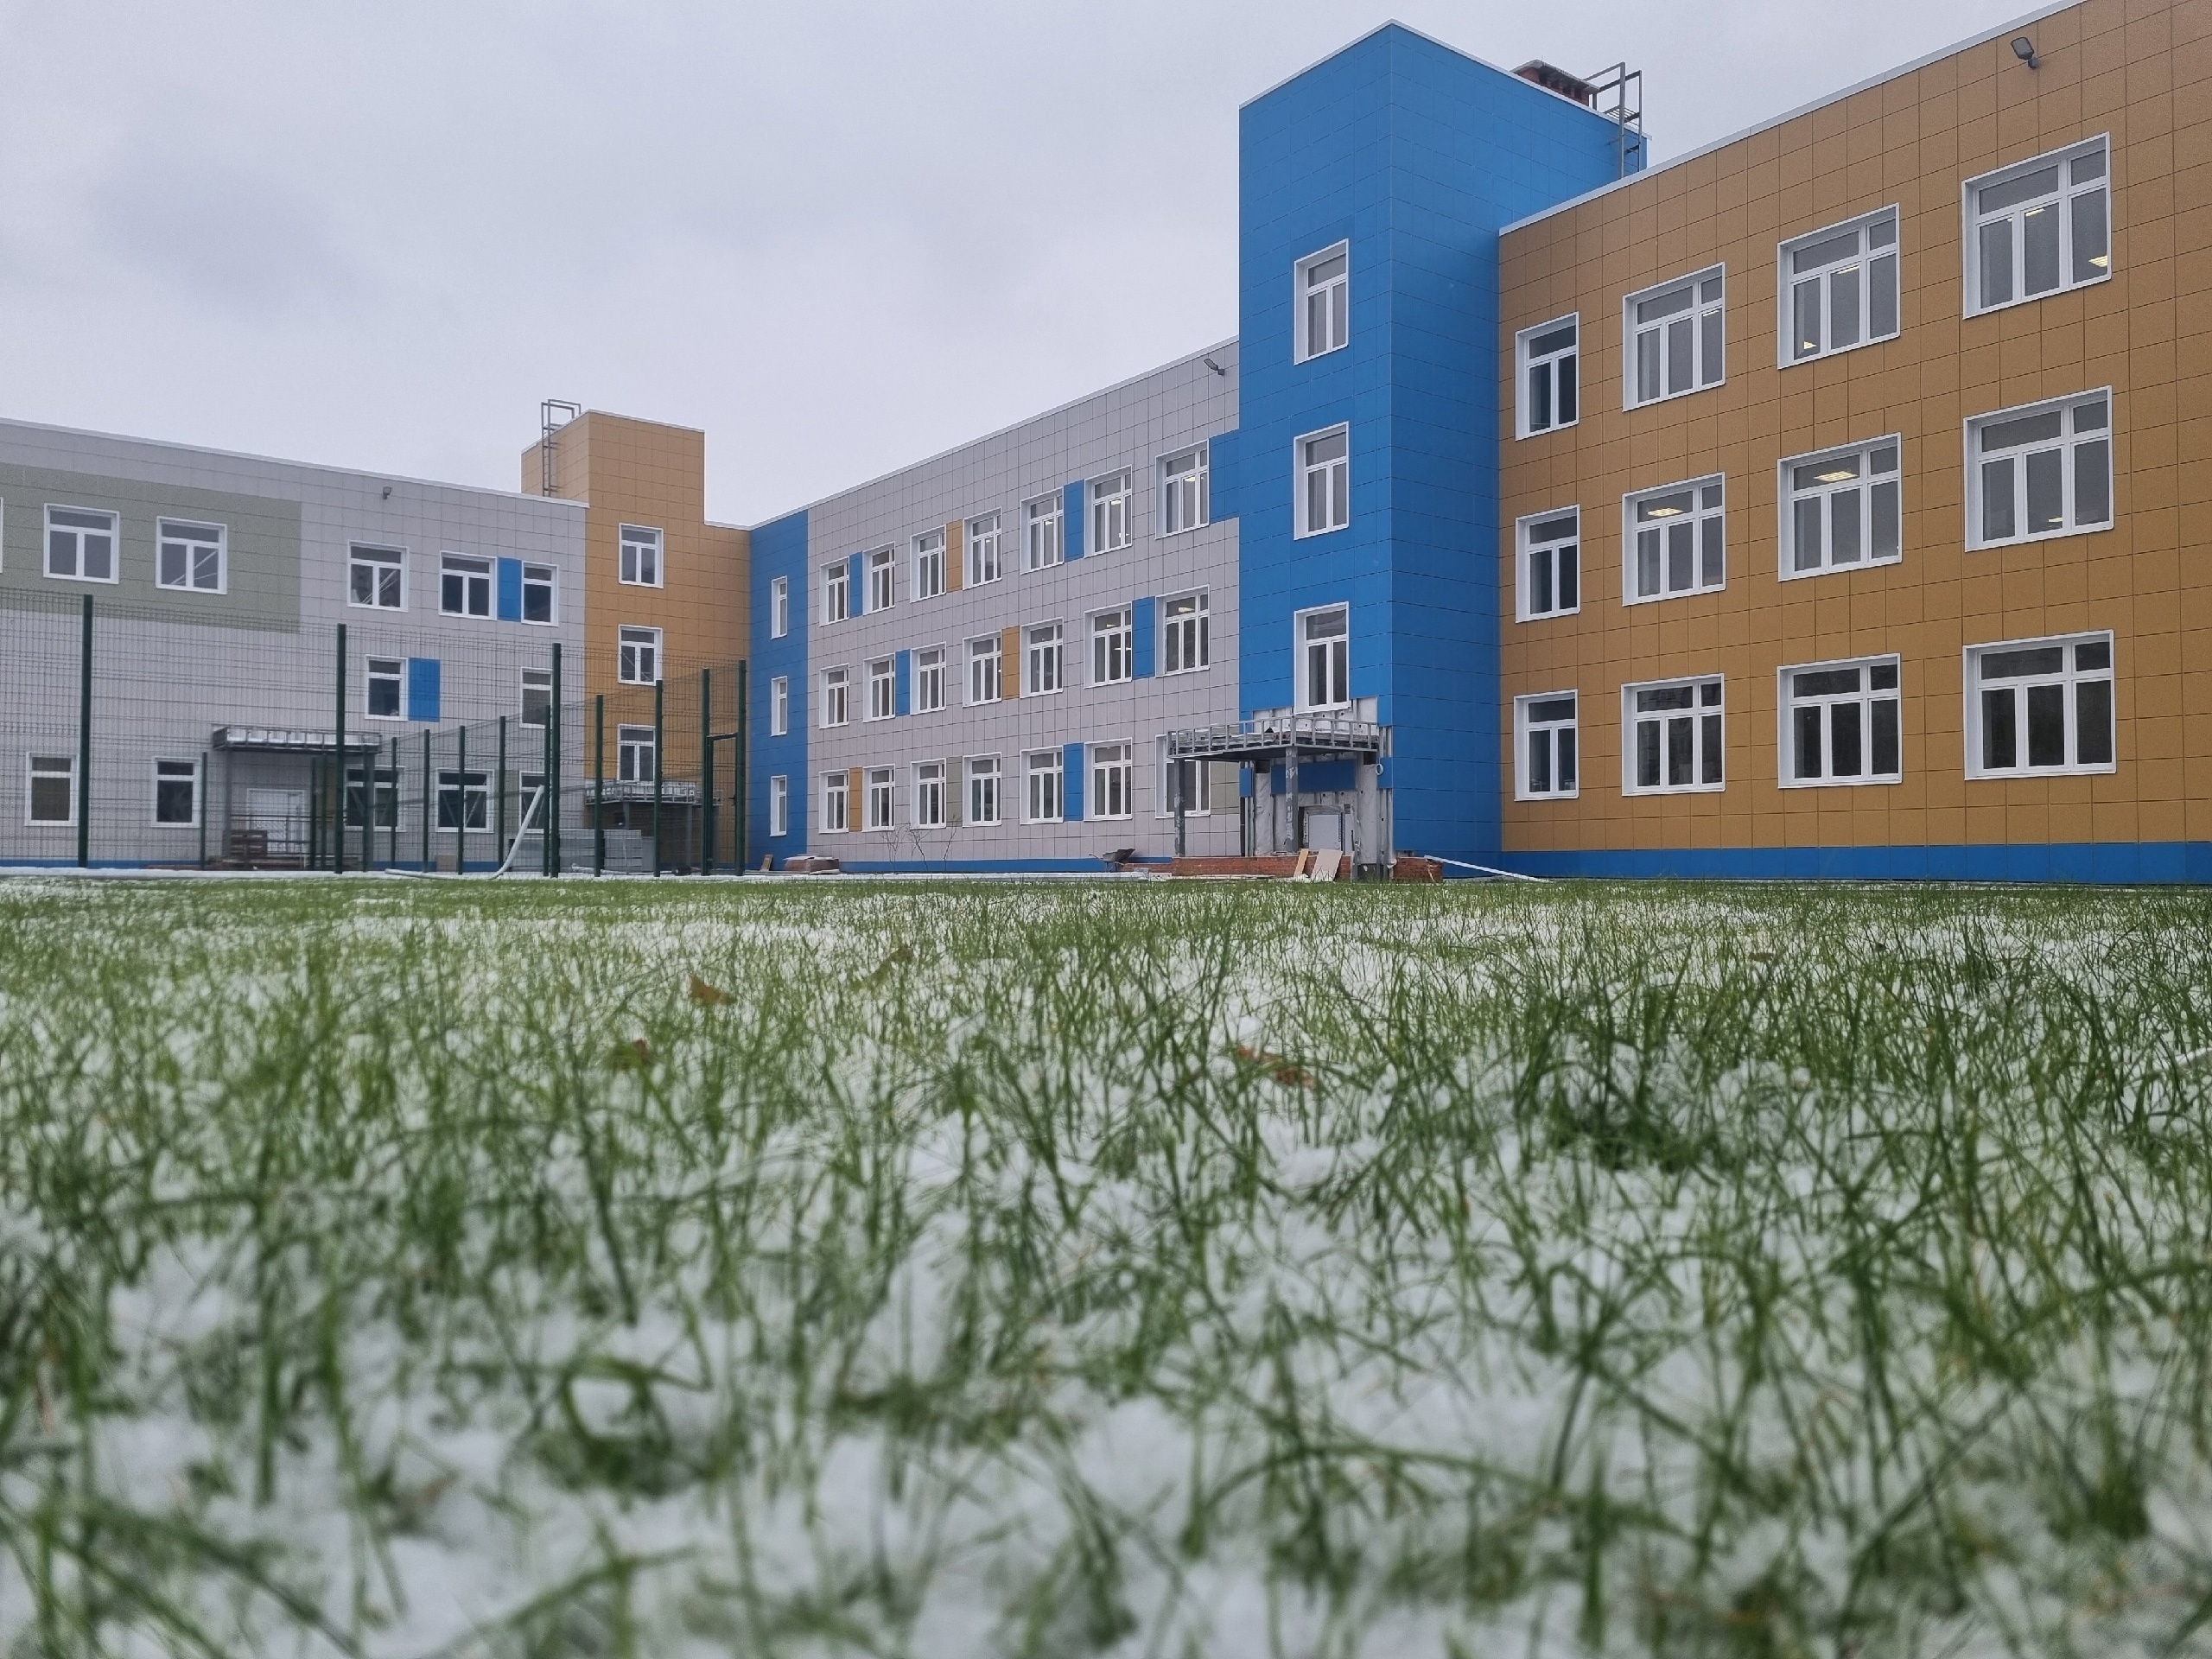 Завершается строительство школьного корпуса 44-й гимназии в Суховке.